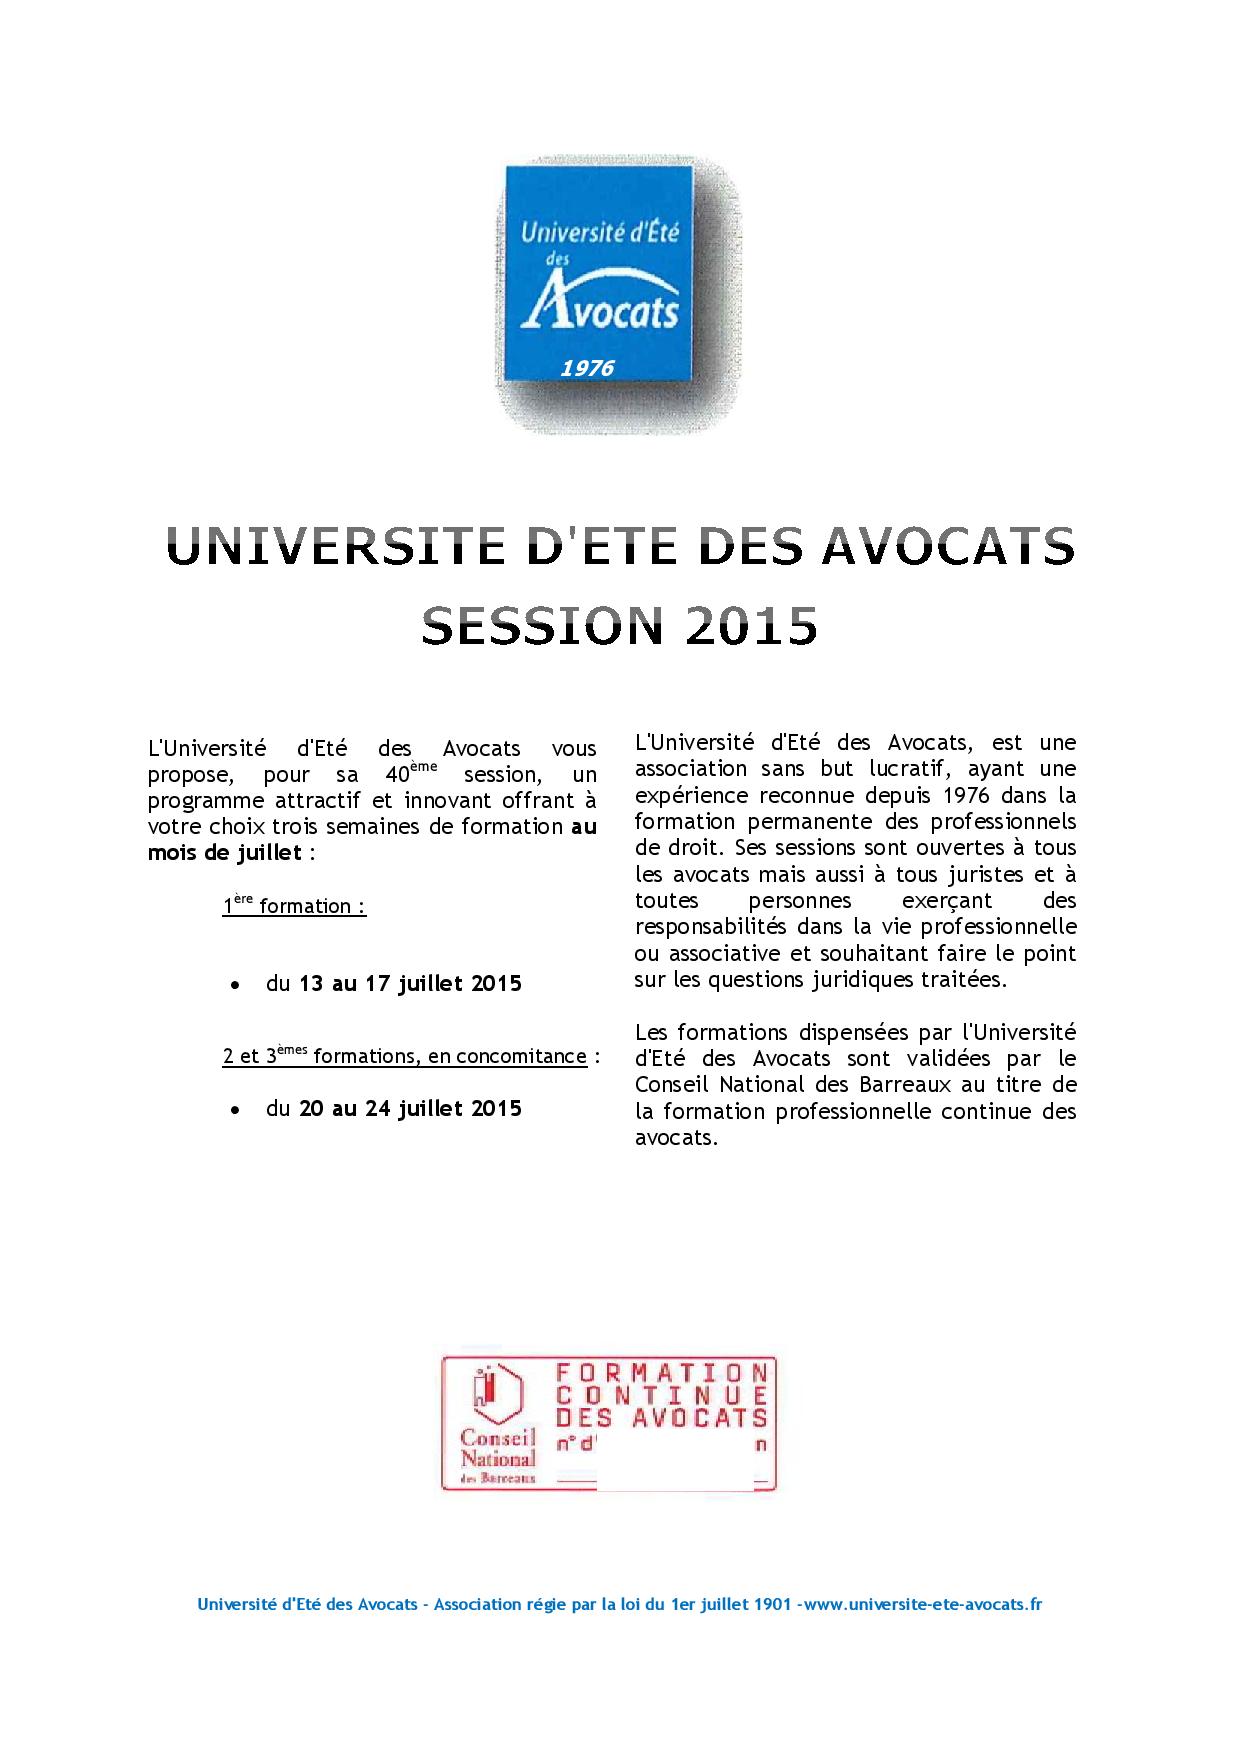 Université d'été des Avocats: programme de formations